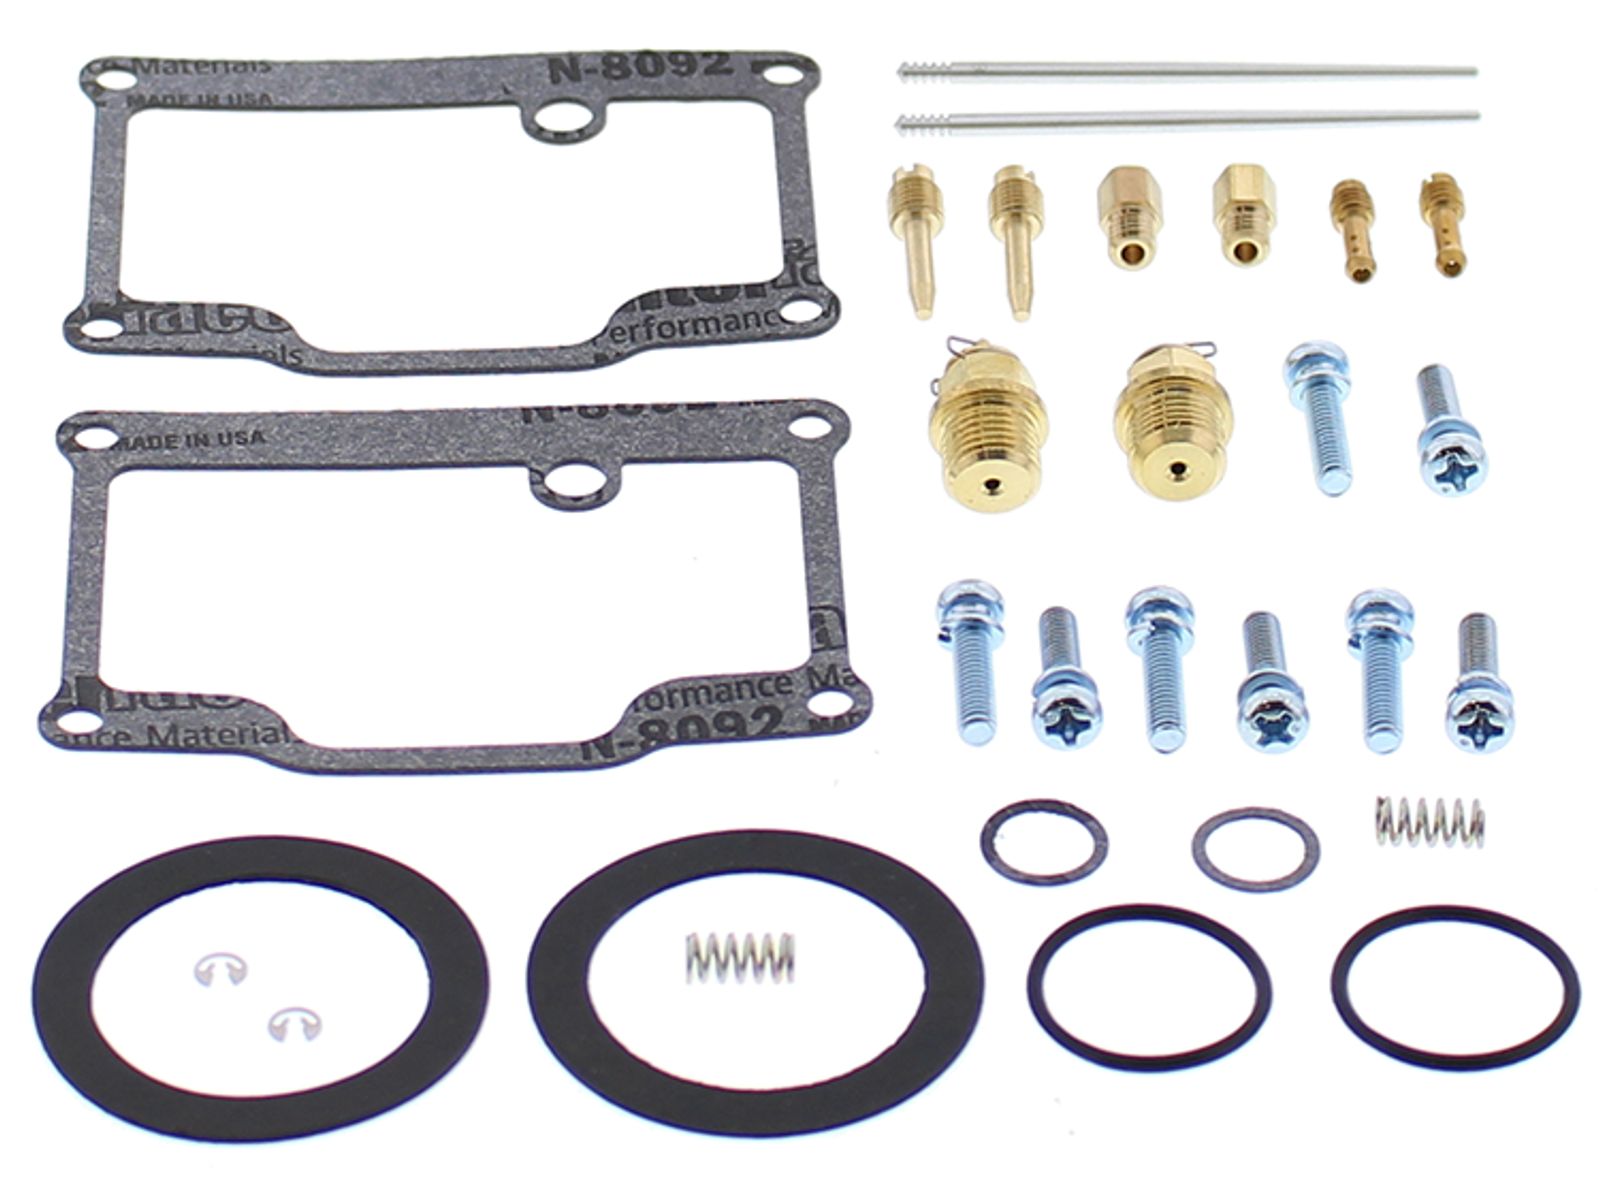 Wrp Carb Repair Kits - WRP261802 image